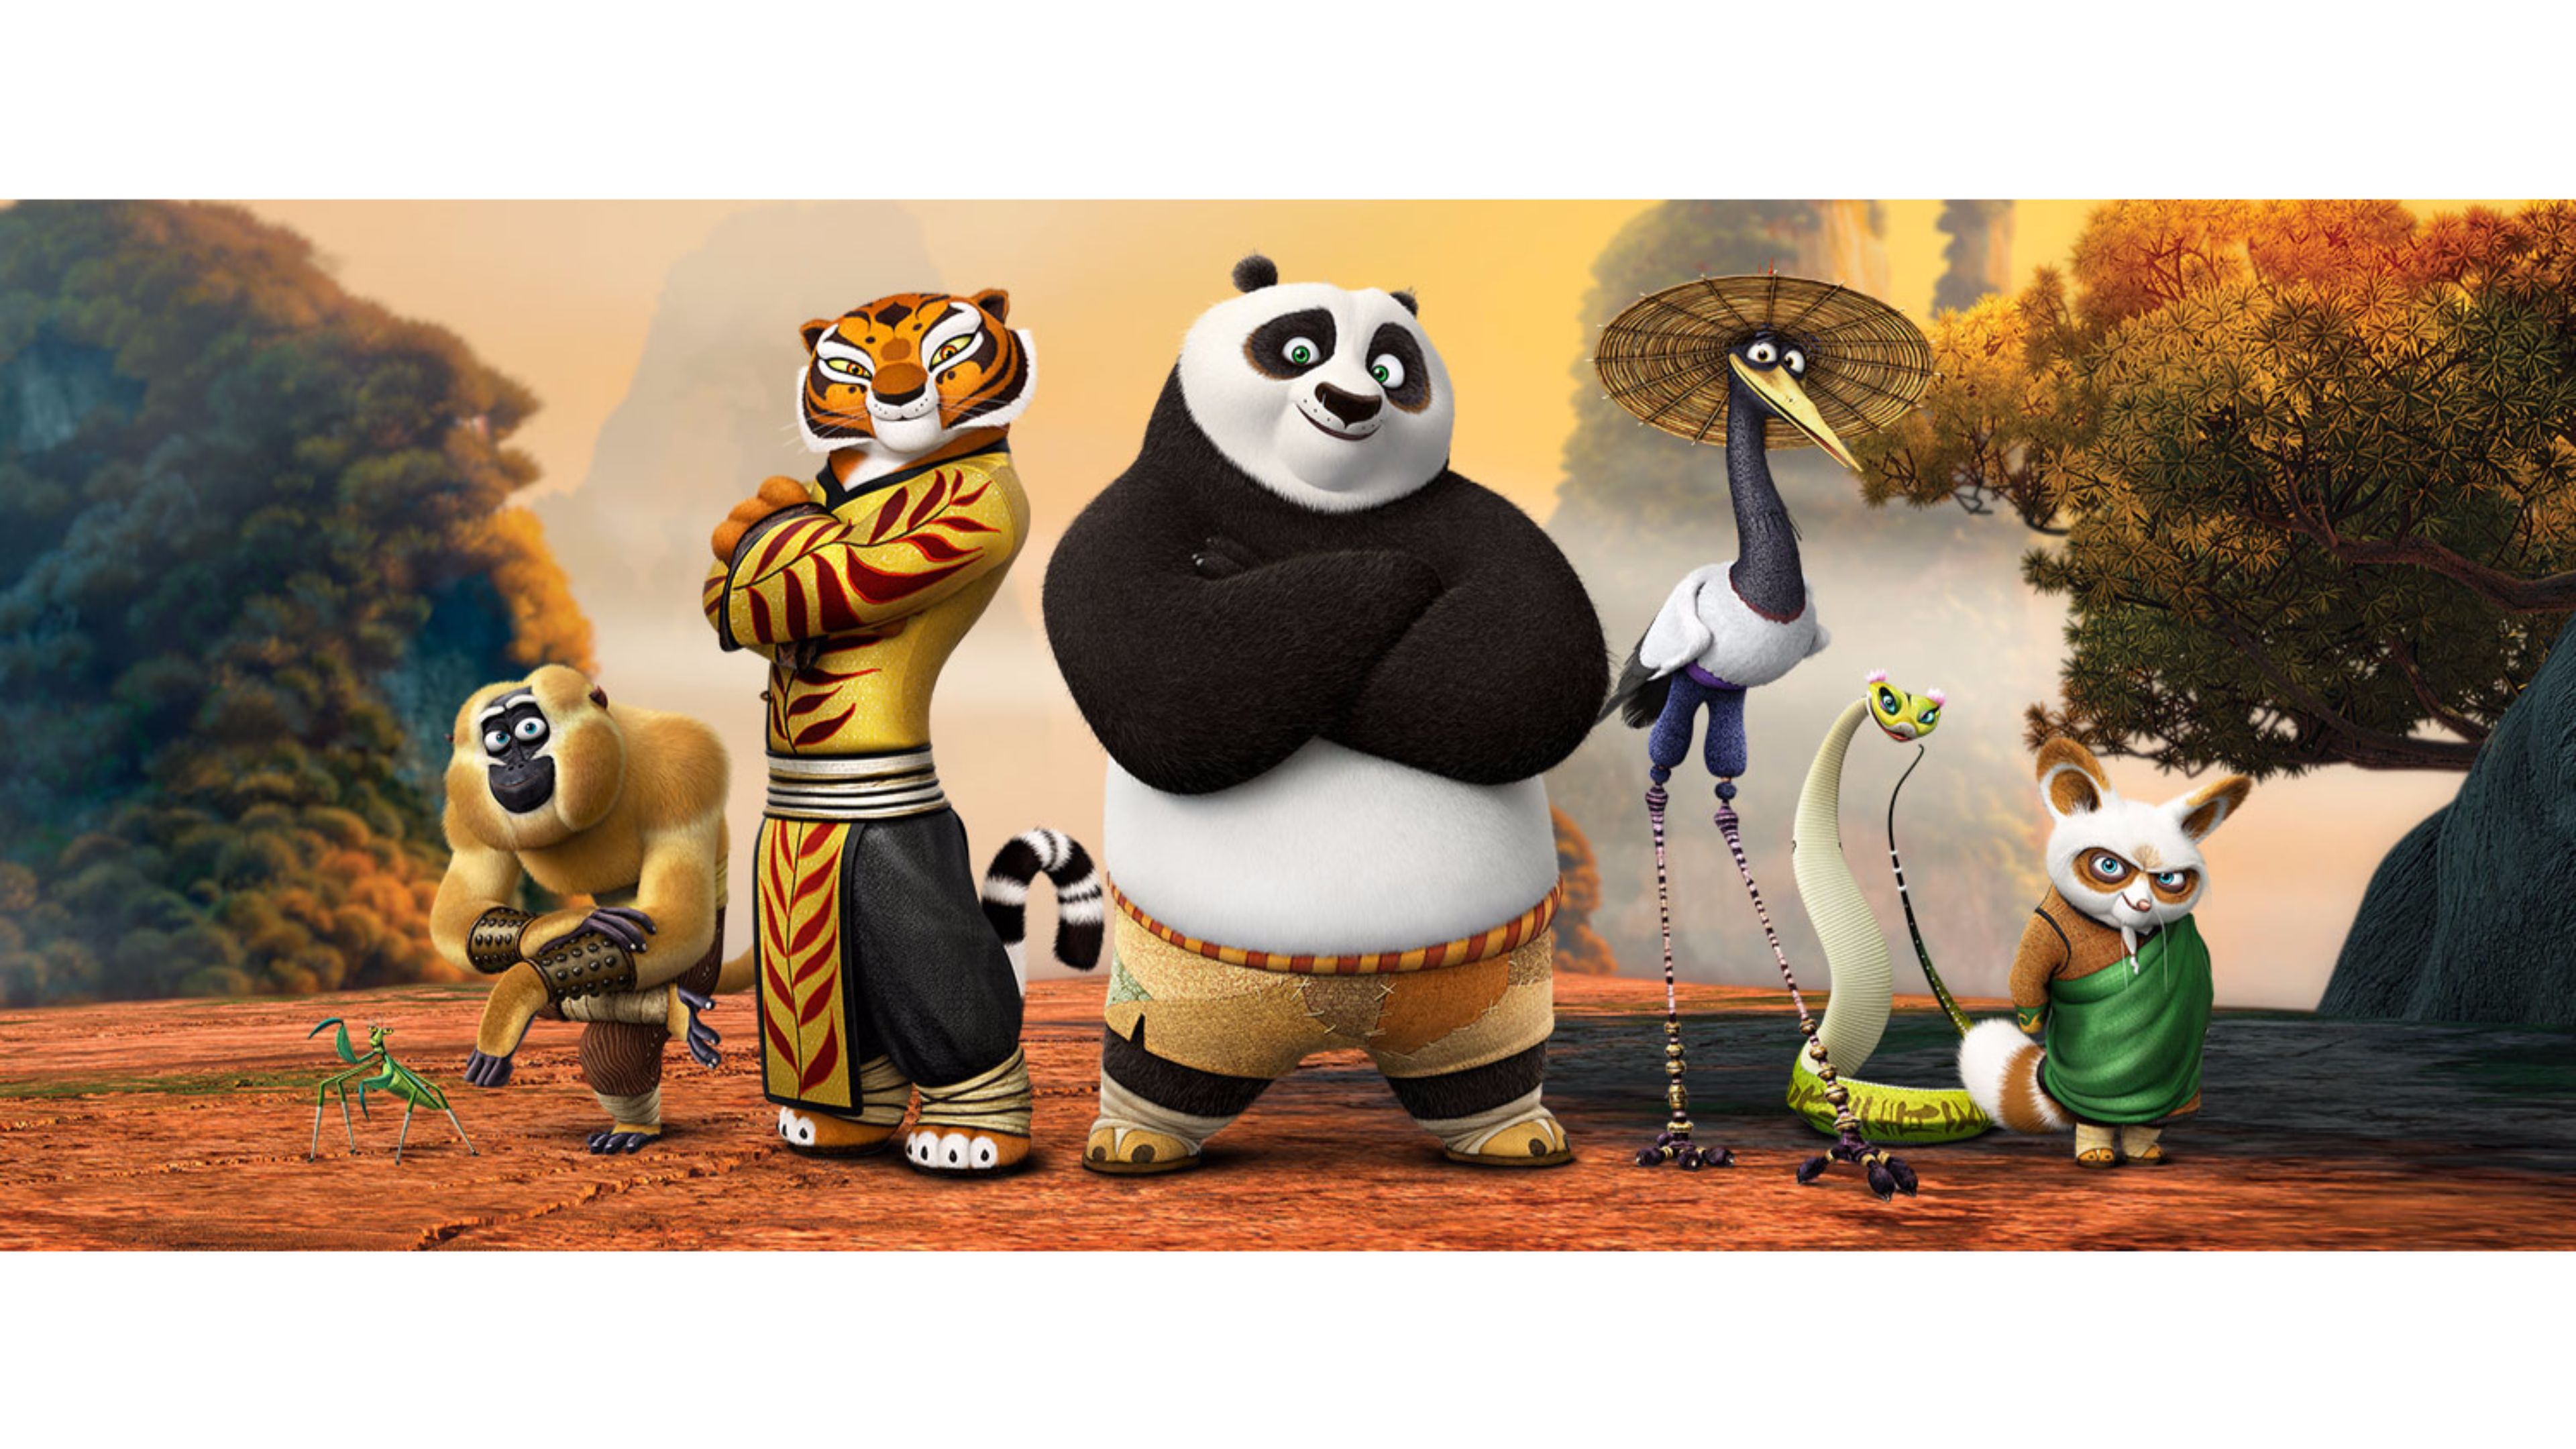 Amazing 2016 4K Kung Fu Panda Movie Wallpapers | Free 4K Wallpaper